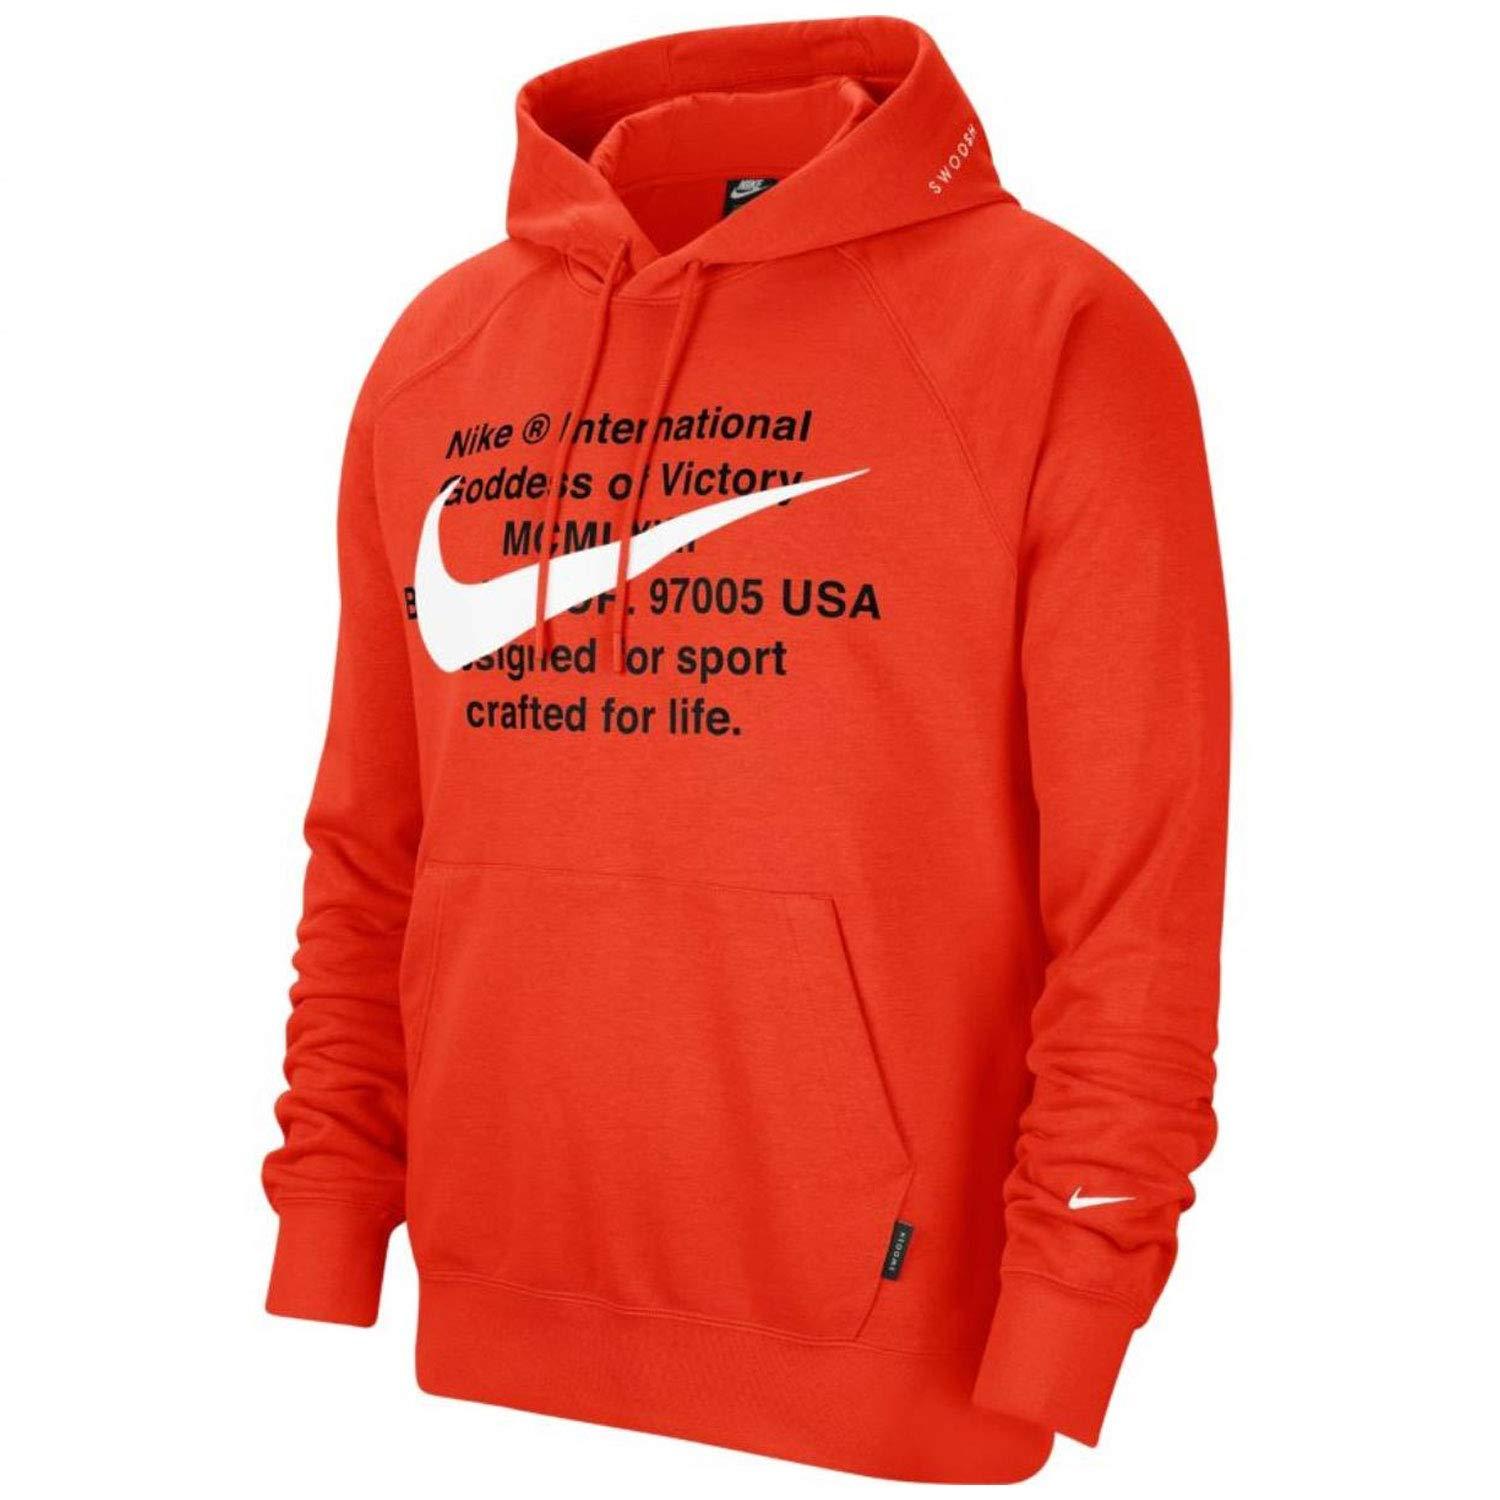 Nike Swoosh Hoodie Orange Hoodie Cj4863-891 Xxl in Red for Men - Lyst